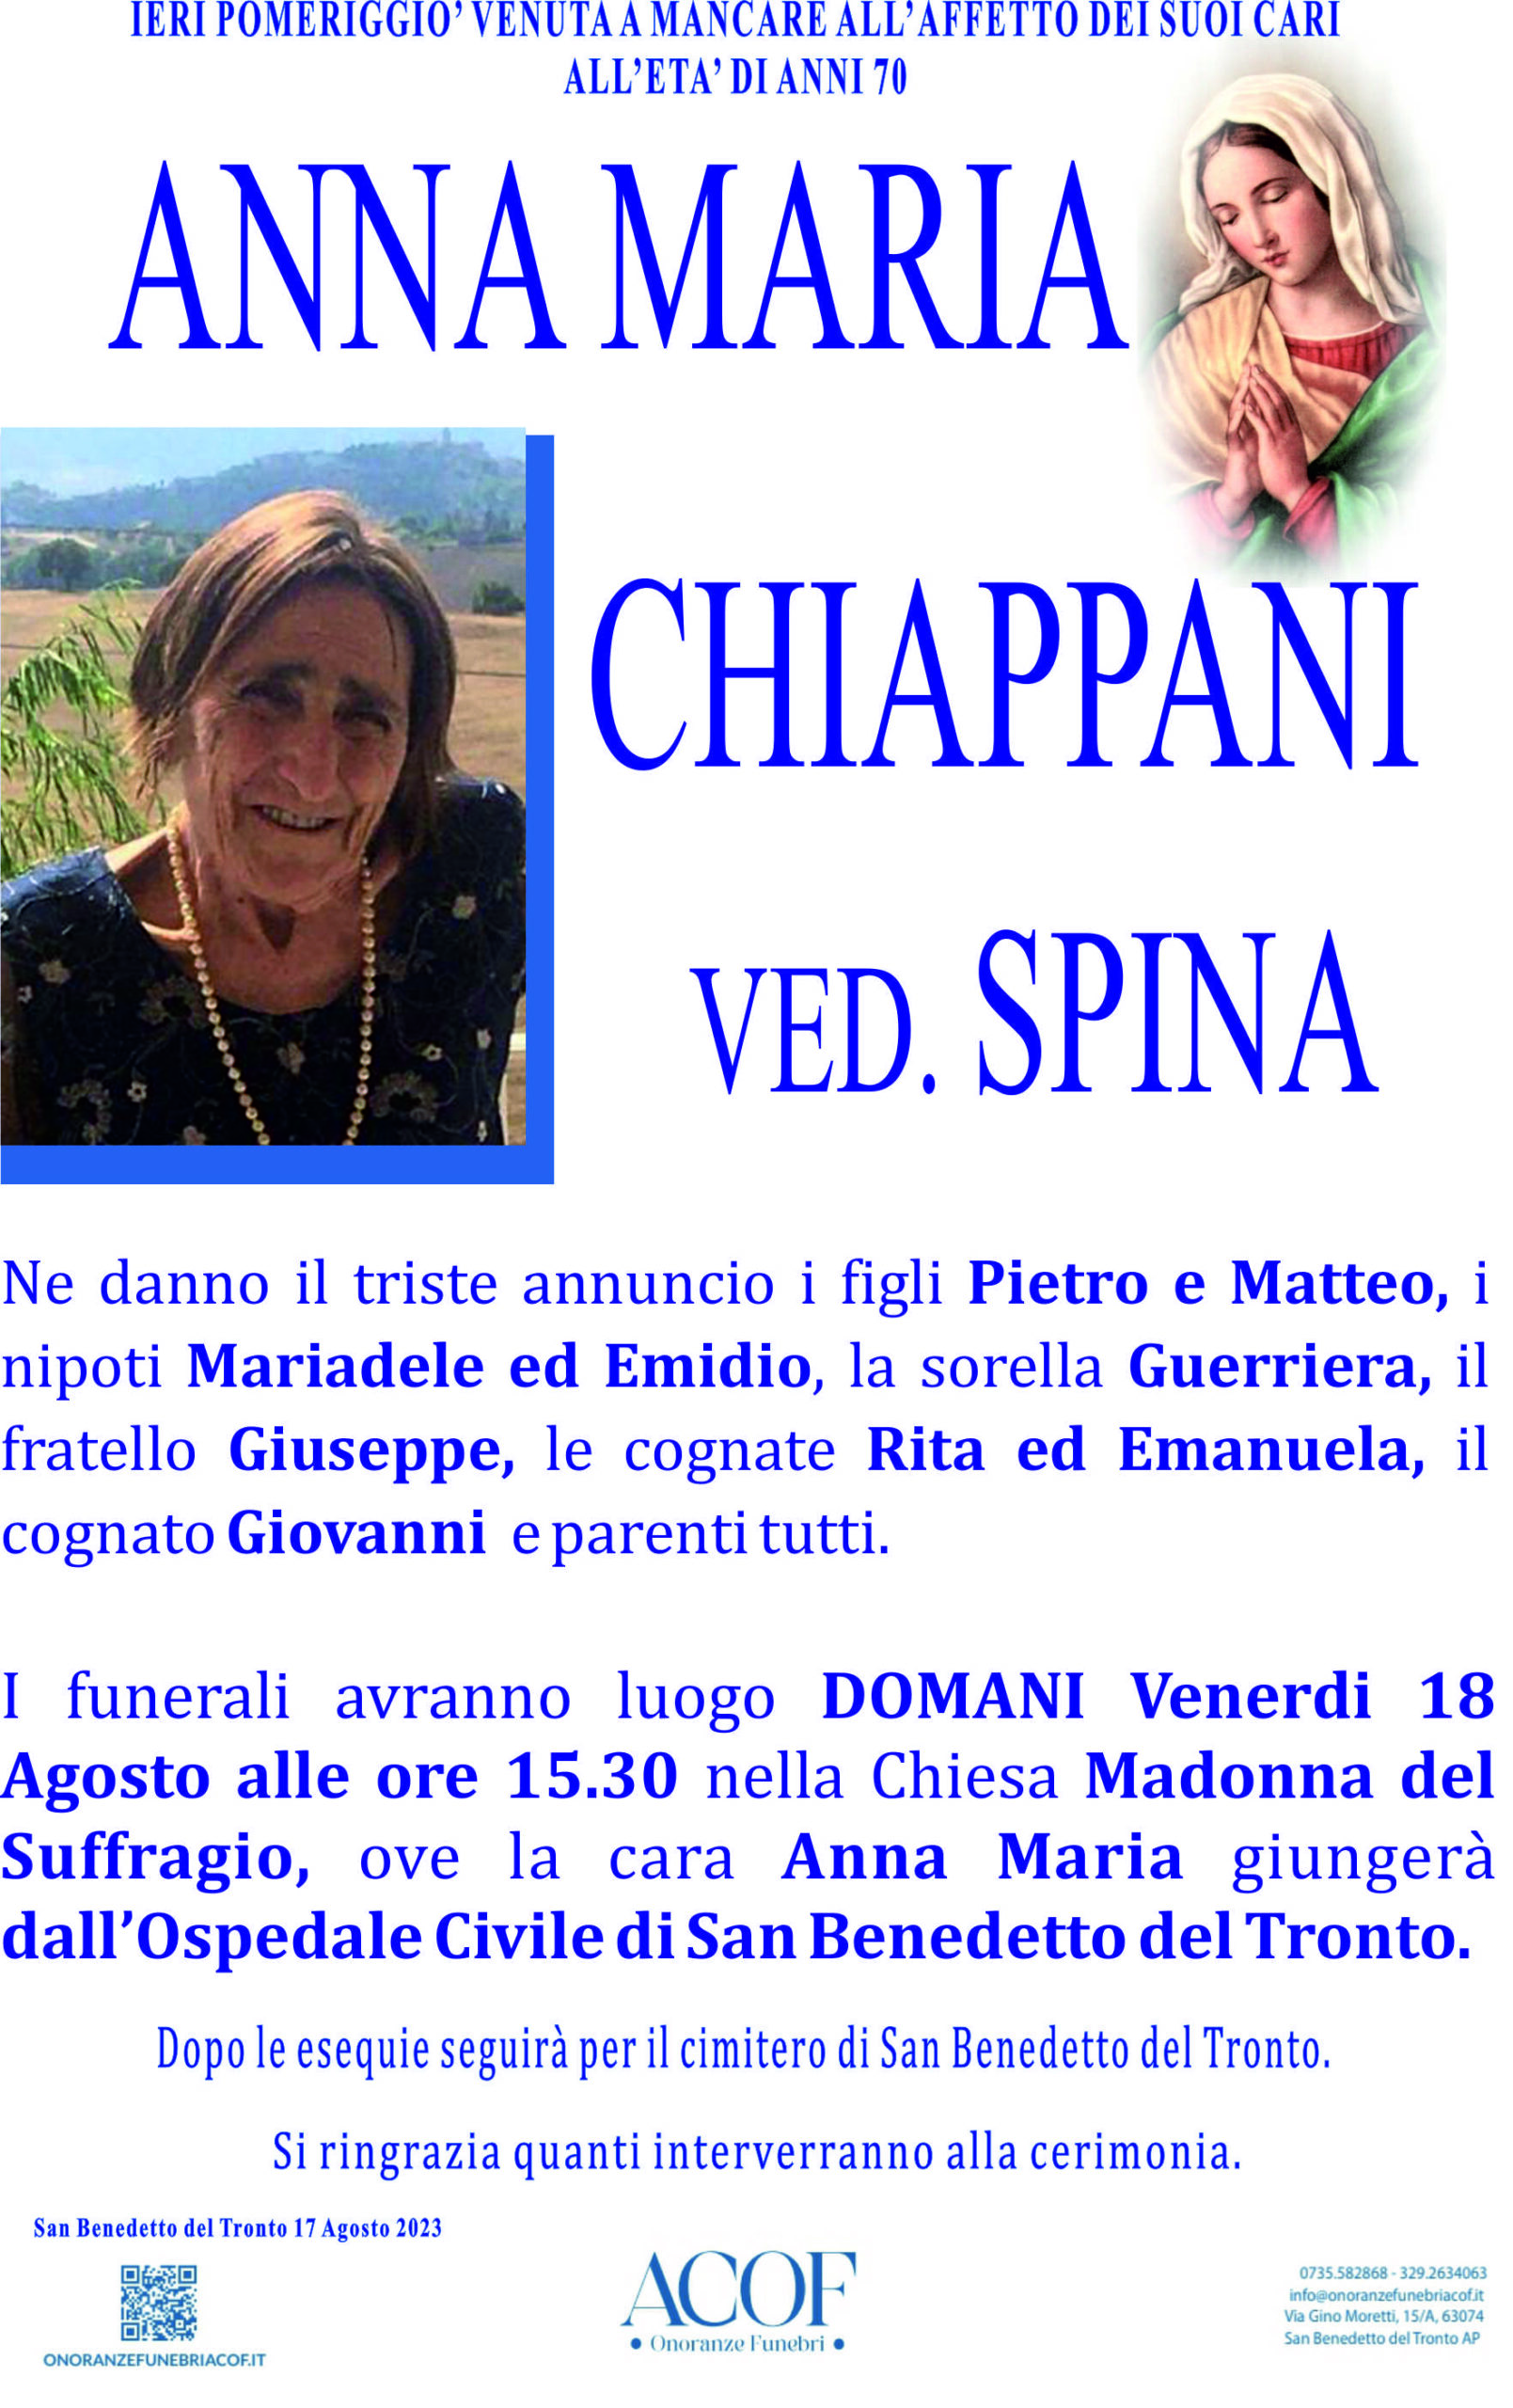 Anna Maria Chiappani